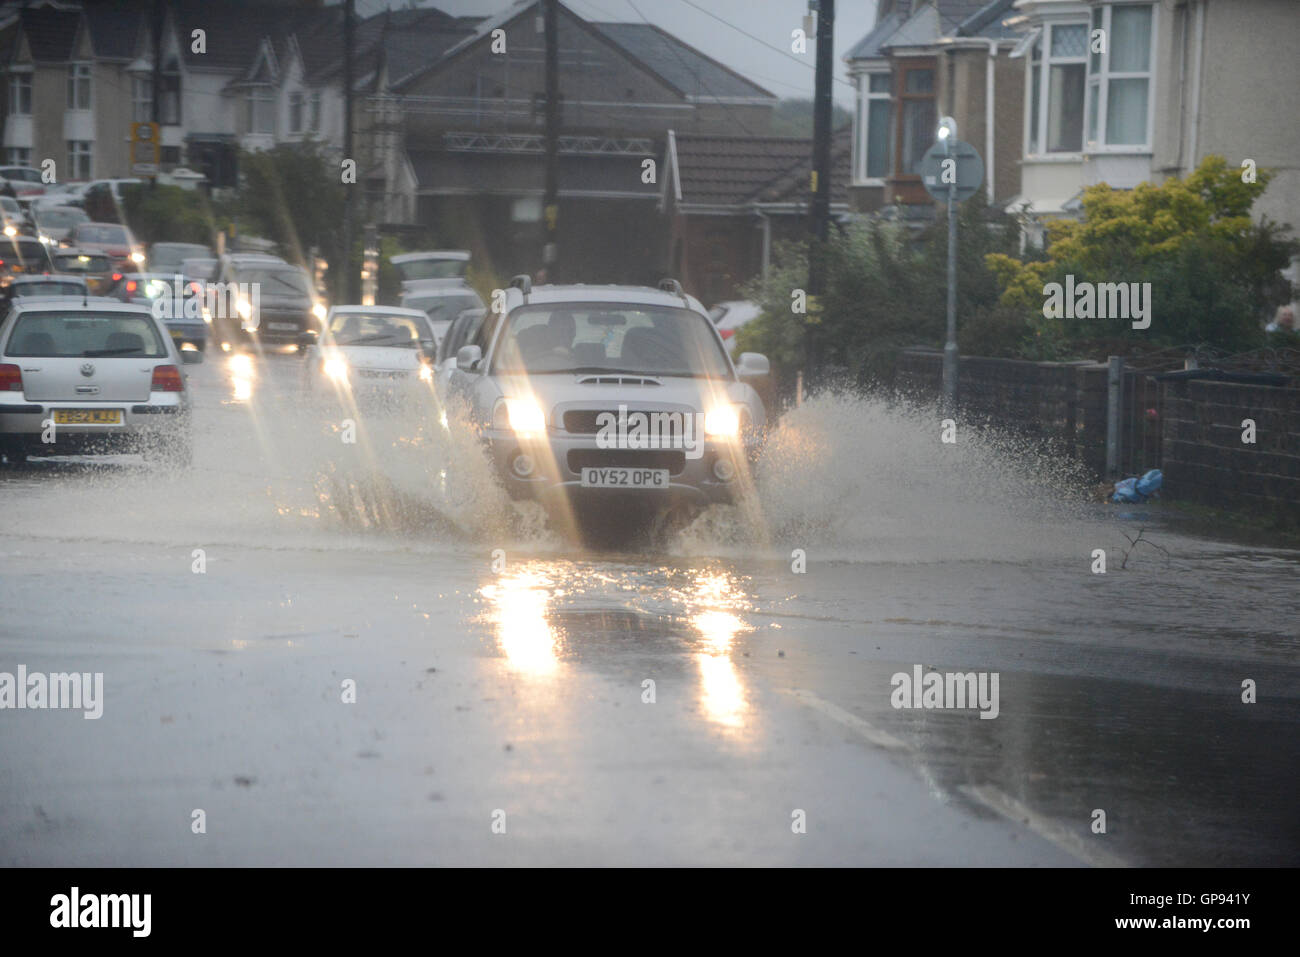 Swansea, Wales, Regno Unito. Il 3 settembre, 2016. News alluvione ha colpito la città di Pontardawe in Swansea come heavy rain cade nel Galles del Sud, causando problemi in tutta la regione. Credito: Robert Melen/Alamy Live News. Foto Stock